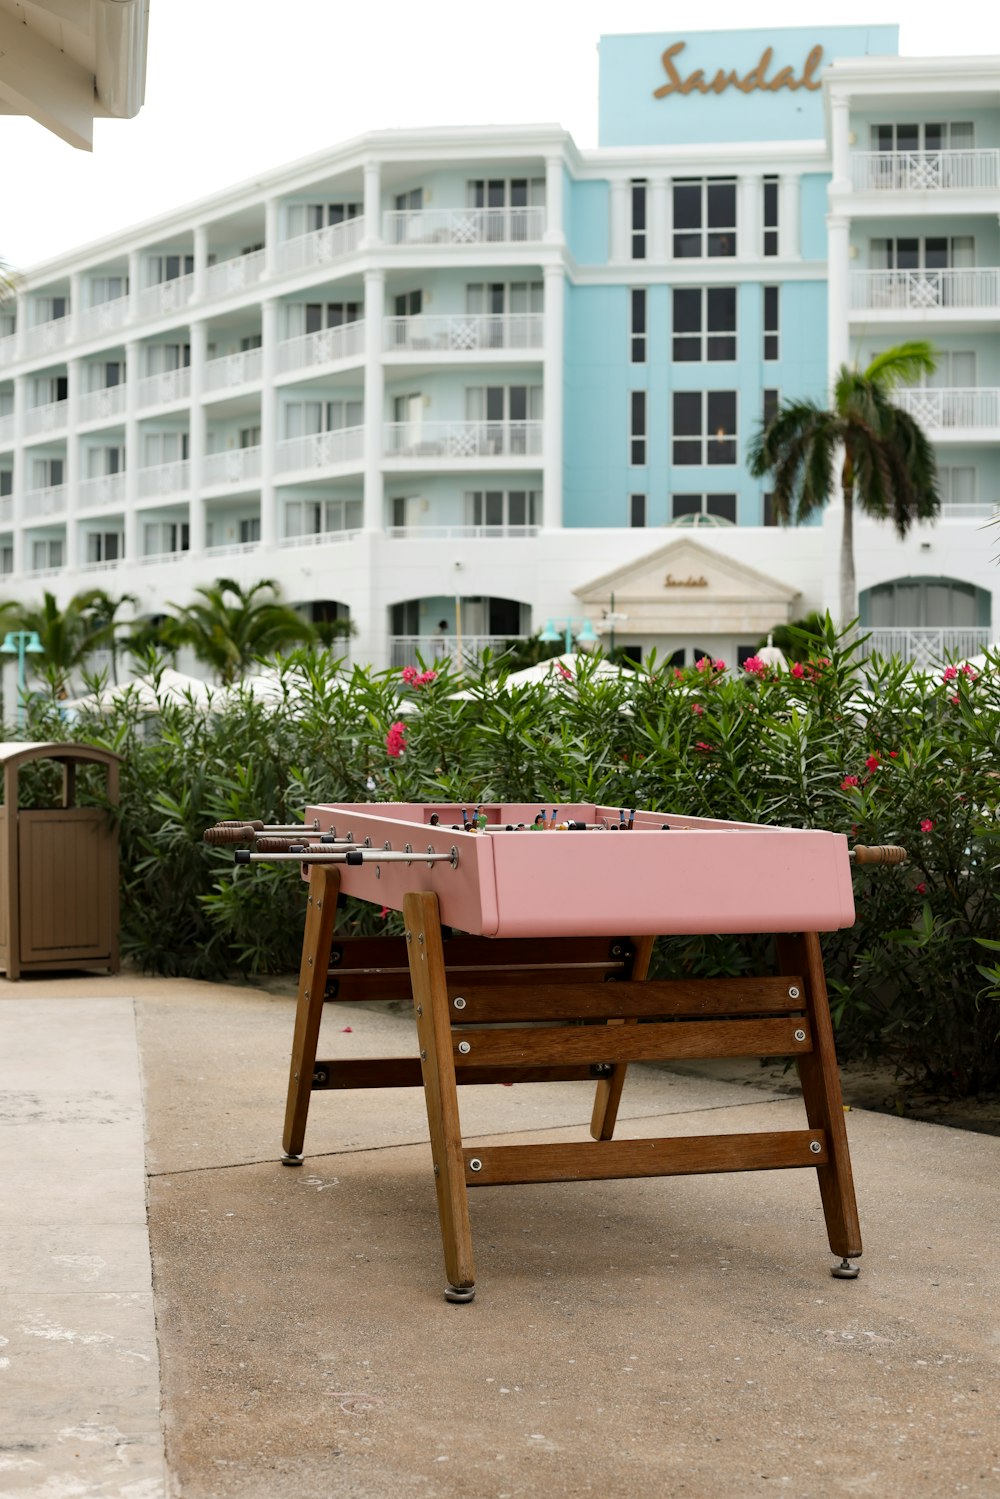 Un banc rose assis devant un hôtel